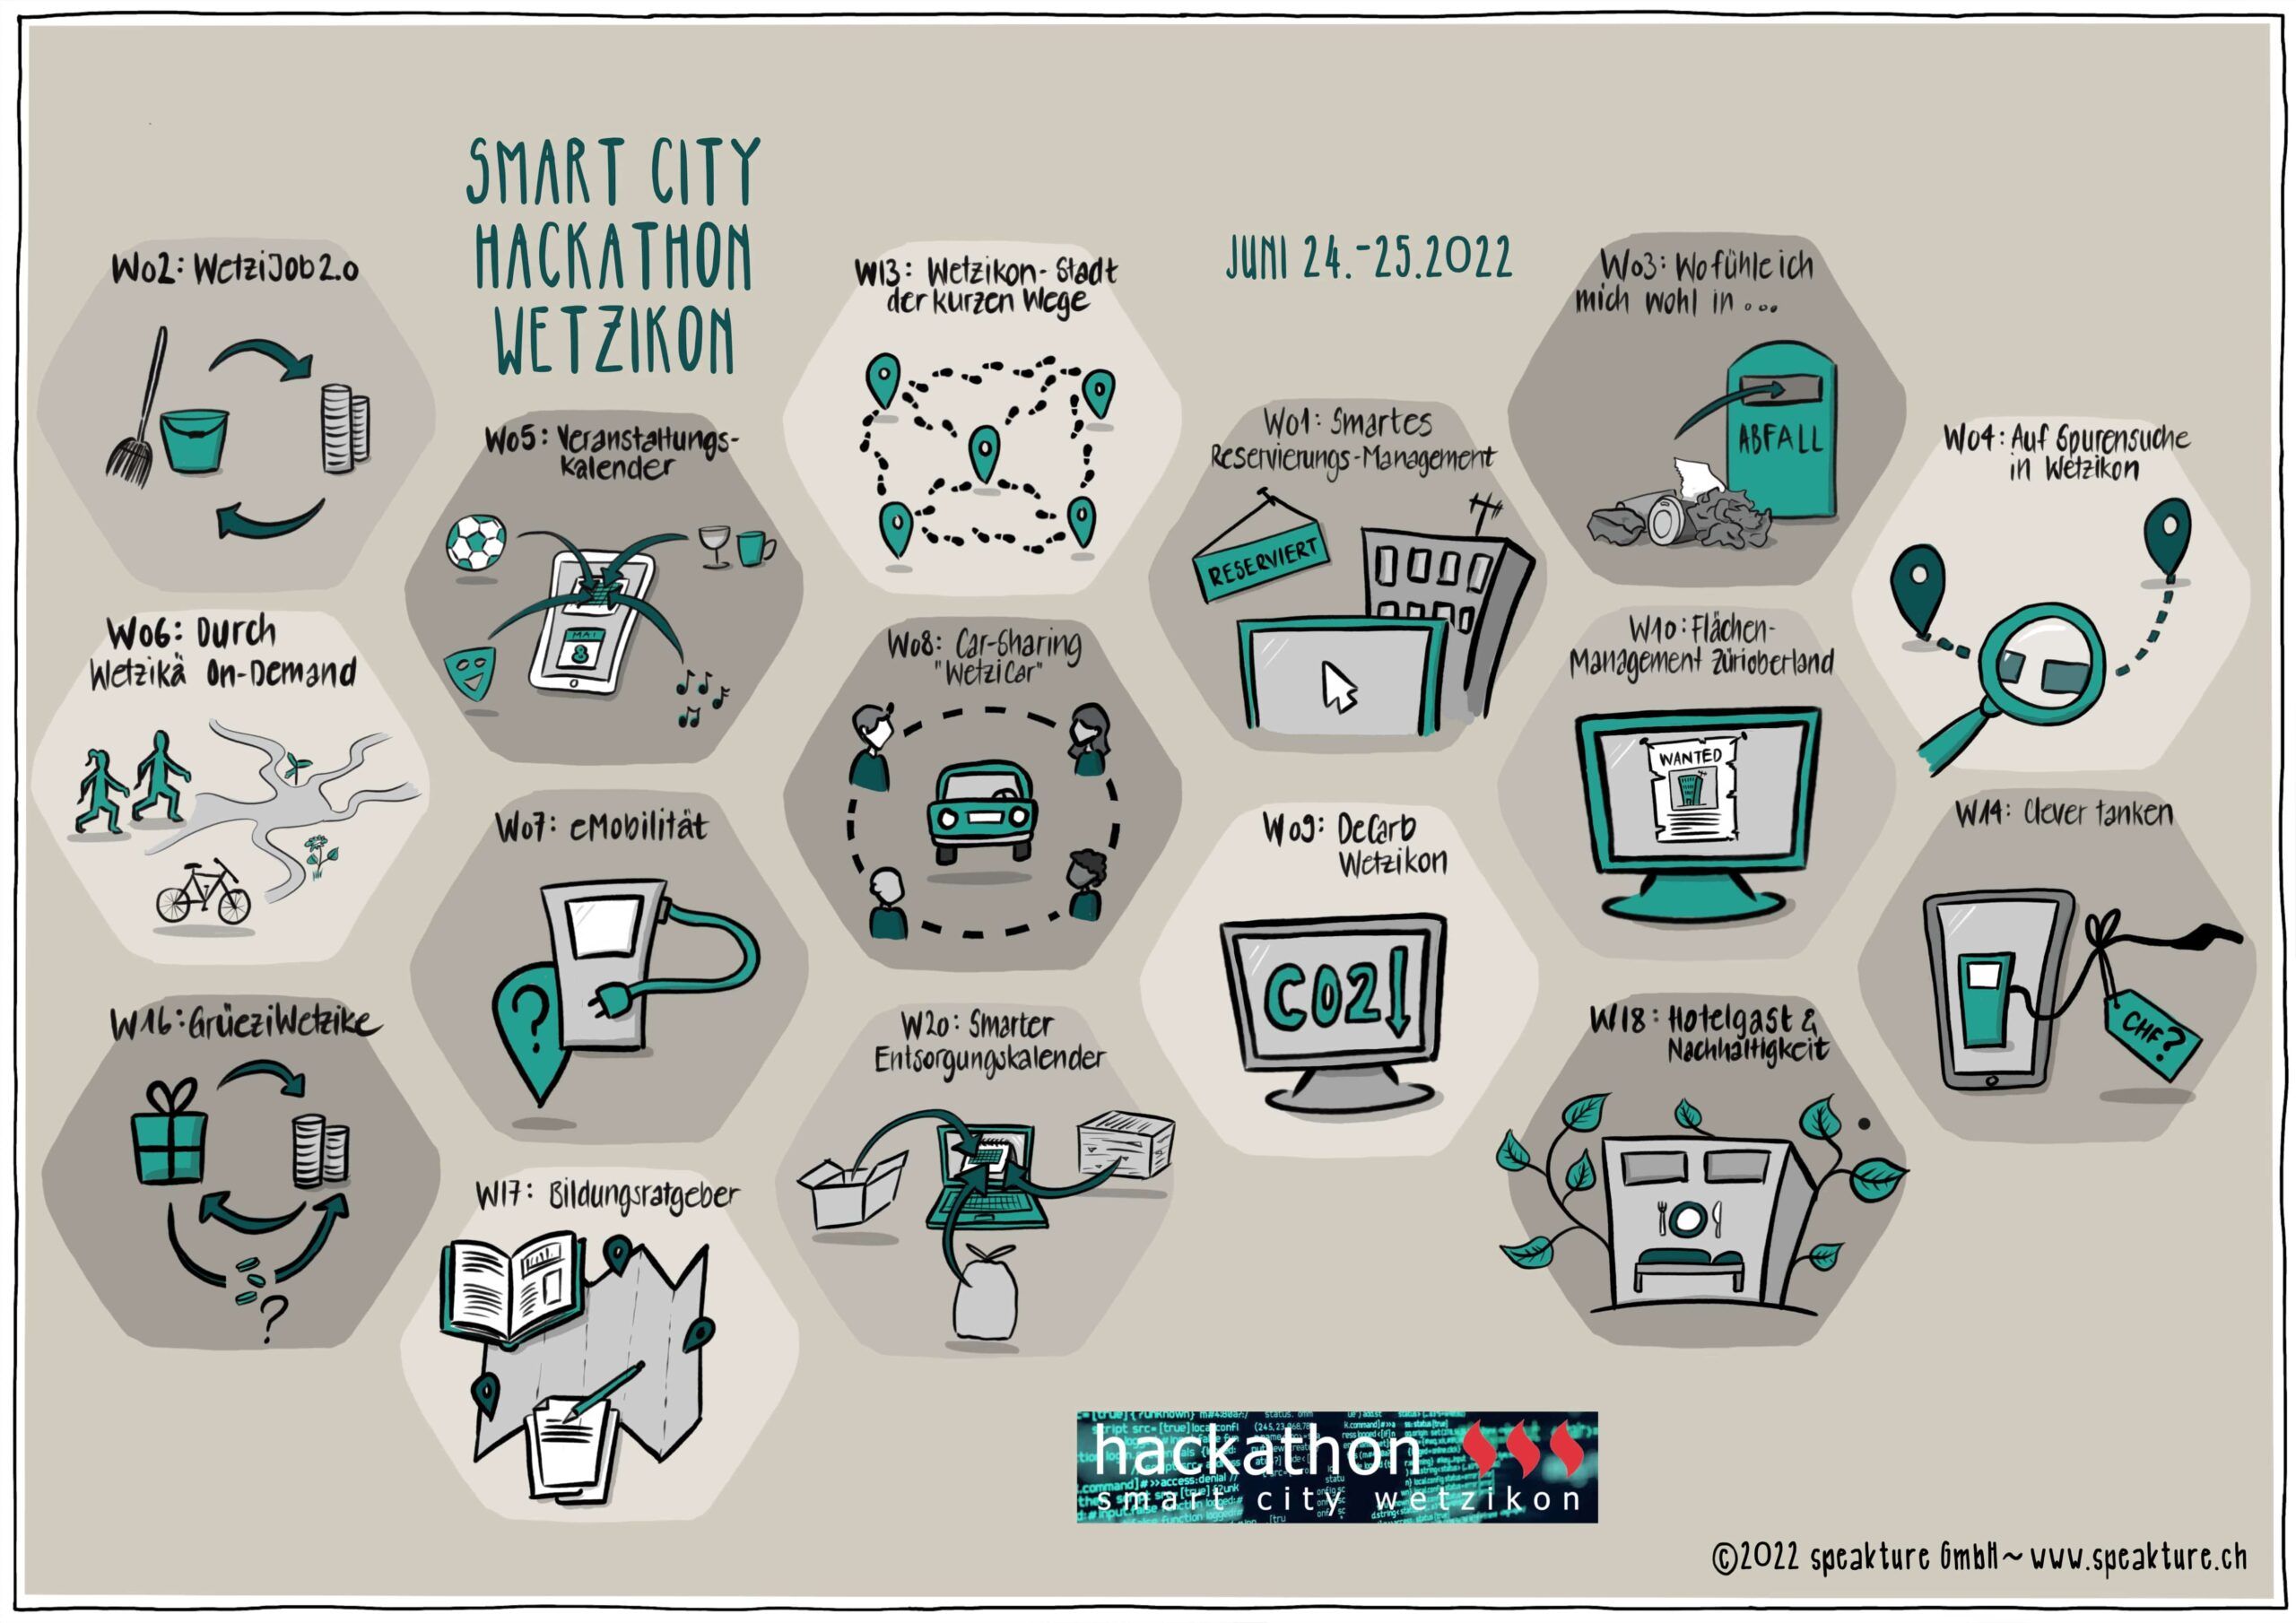 Business Visual von speakture, zeigt eine visuelle Zusammenfassung der Challenges vom SmartCity Hackathon Wetzikon 2022